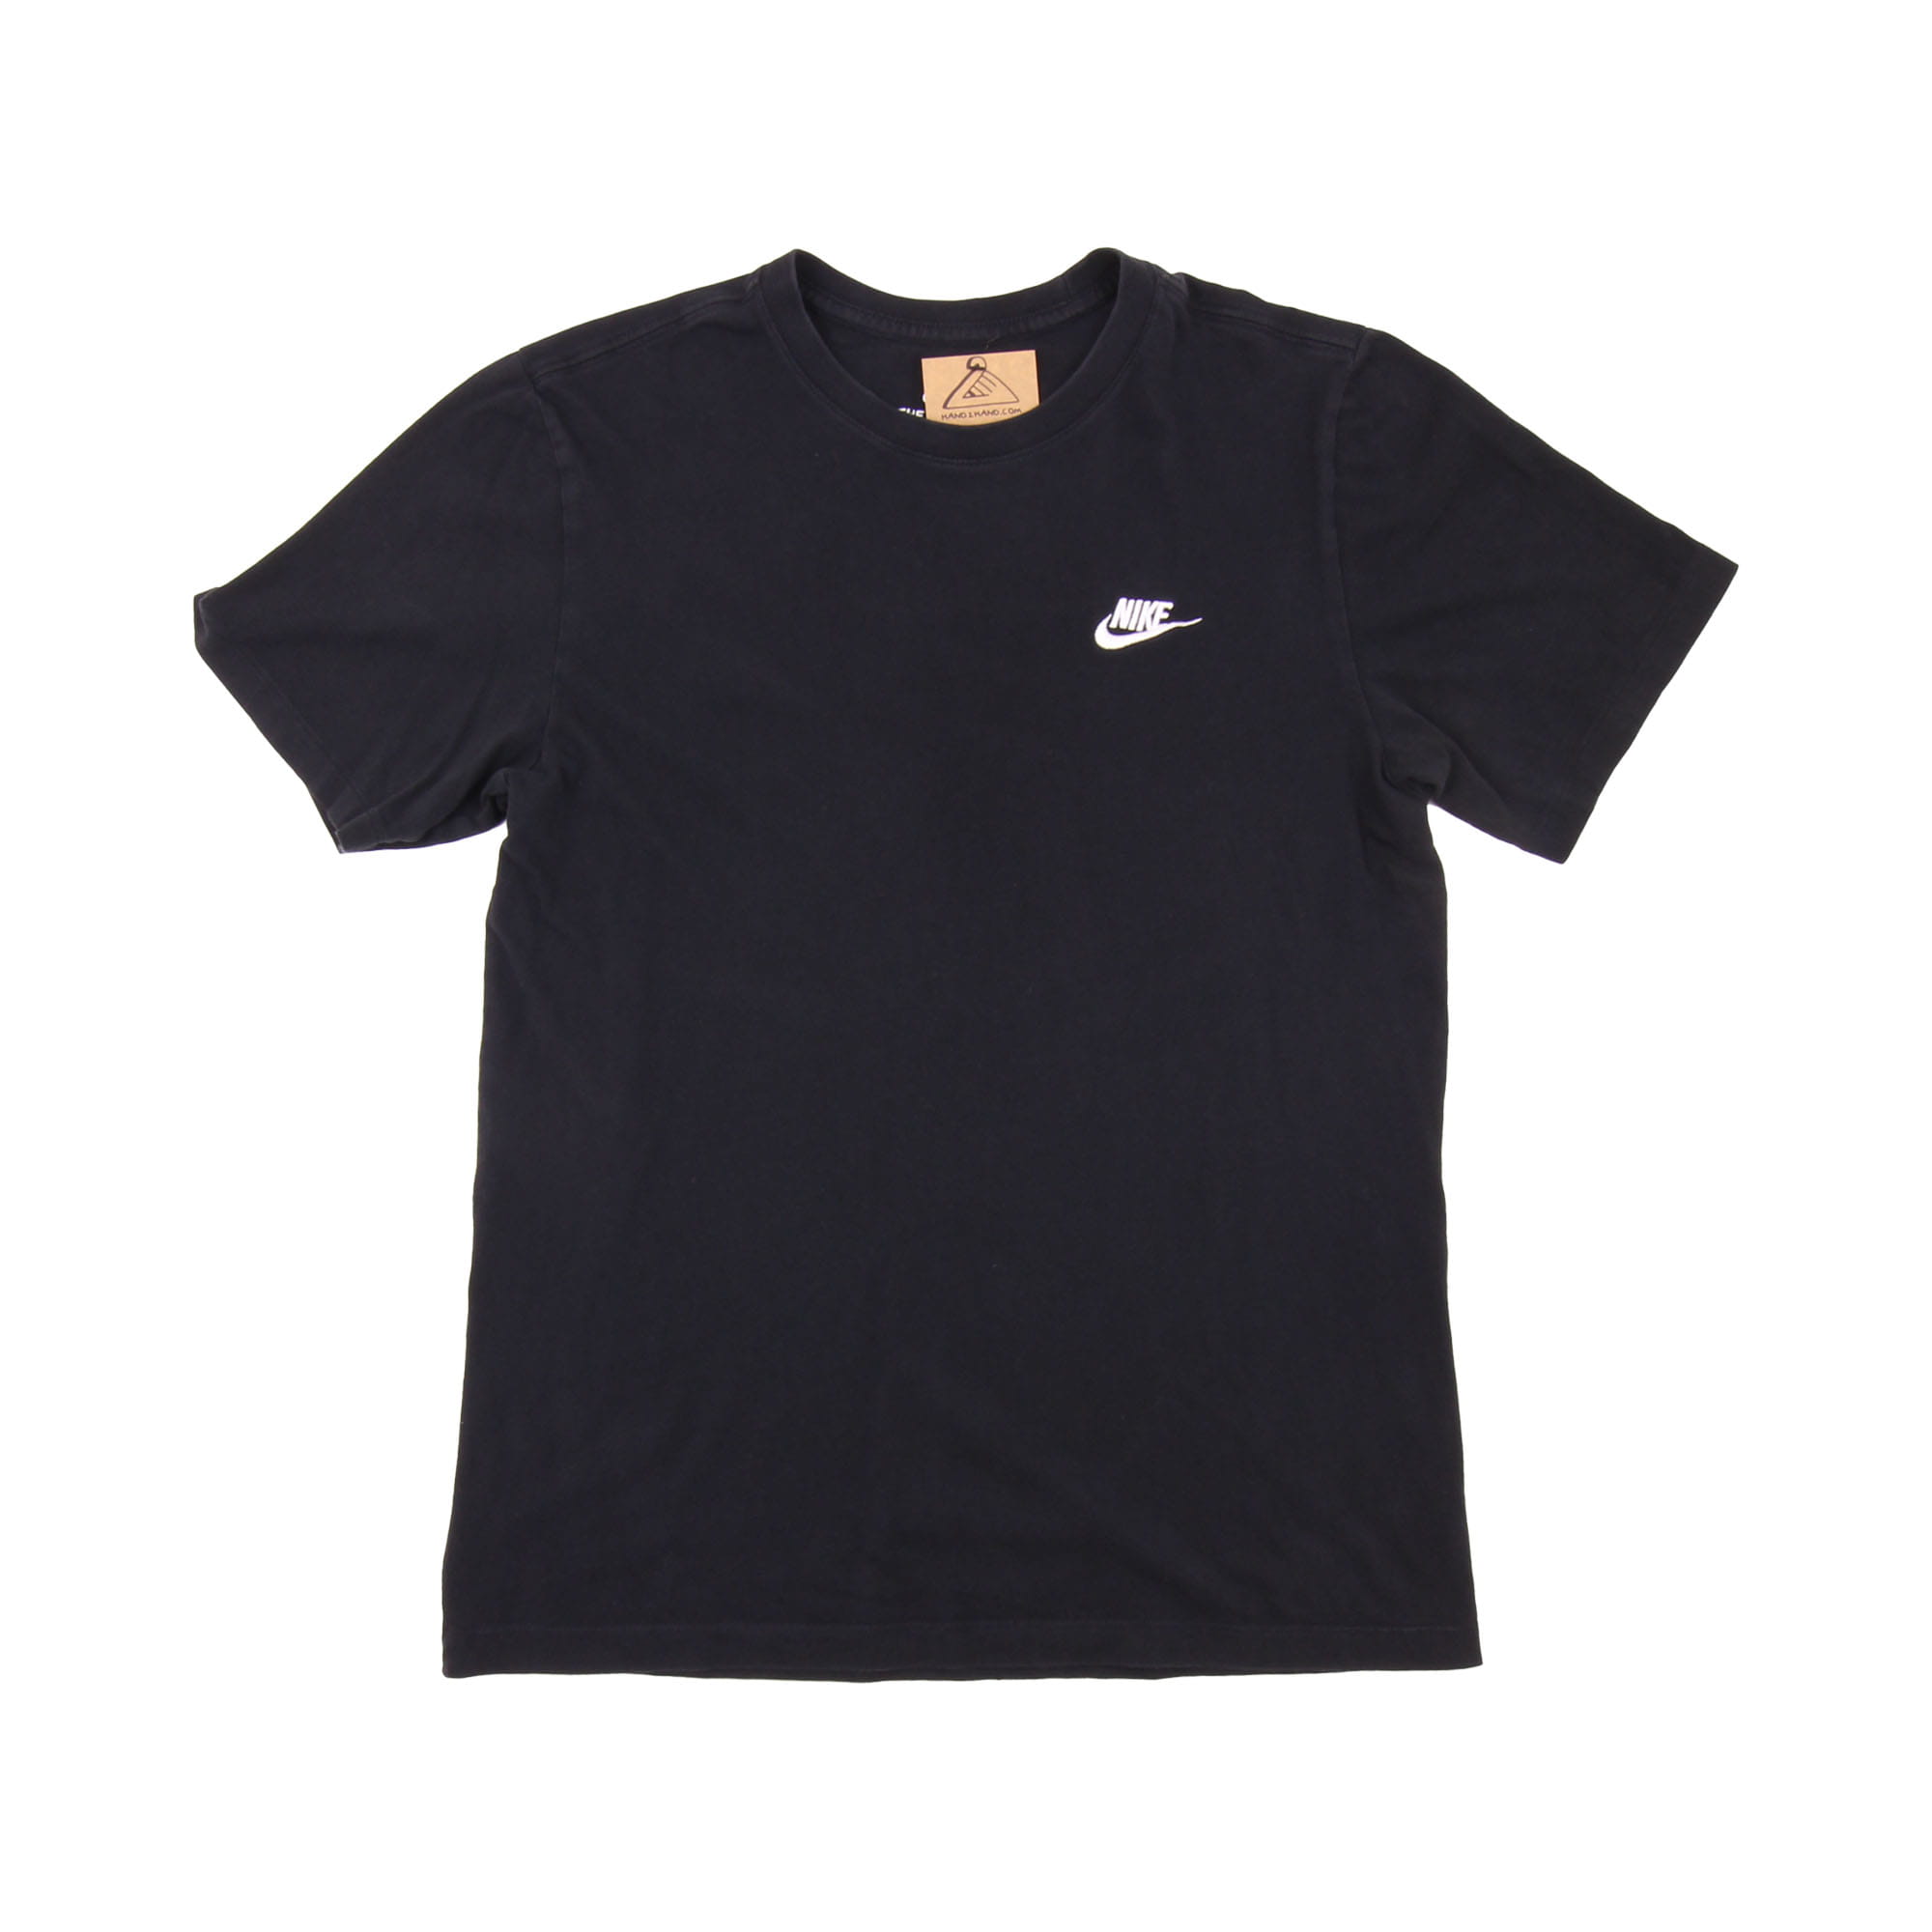 Nike T-Shirt Black -  S